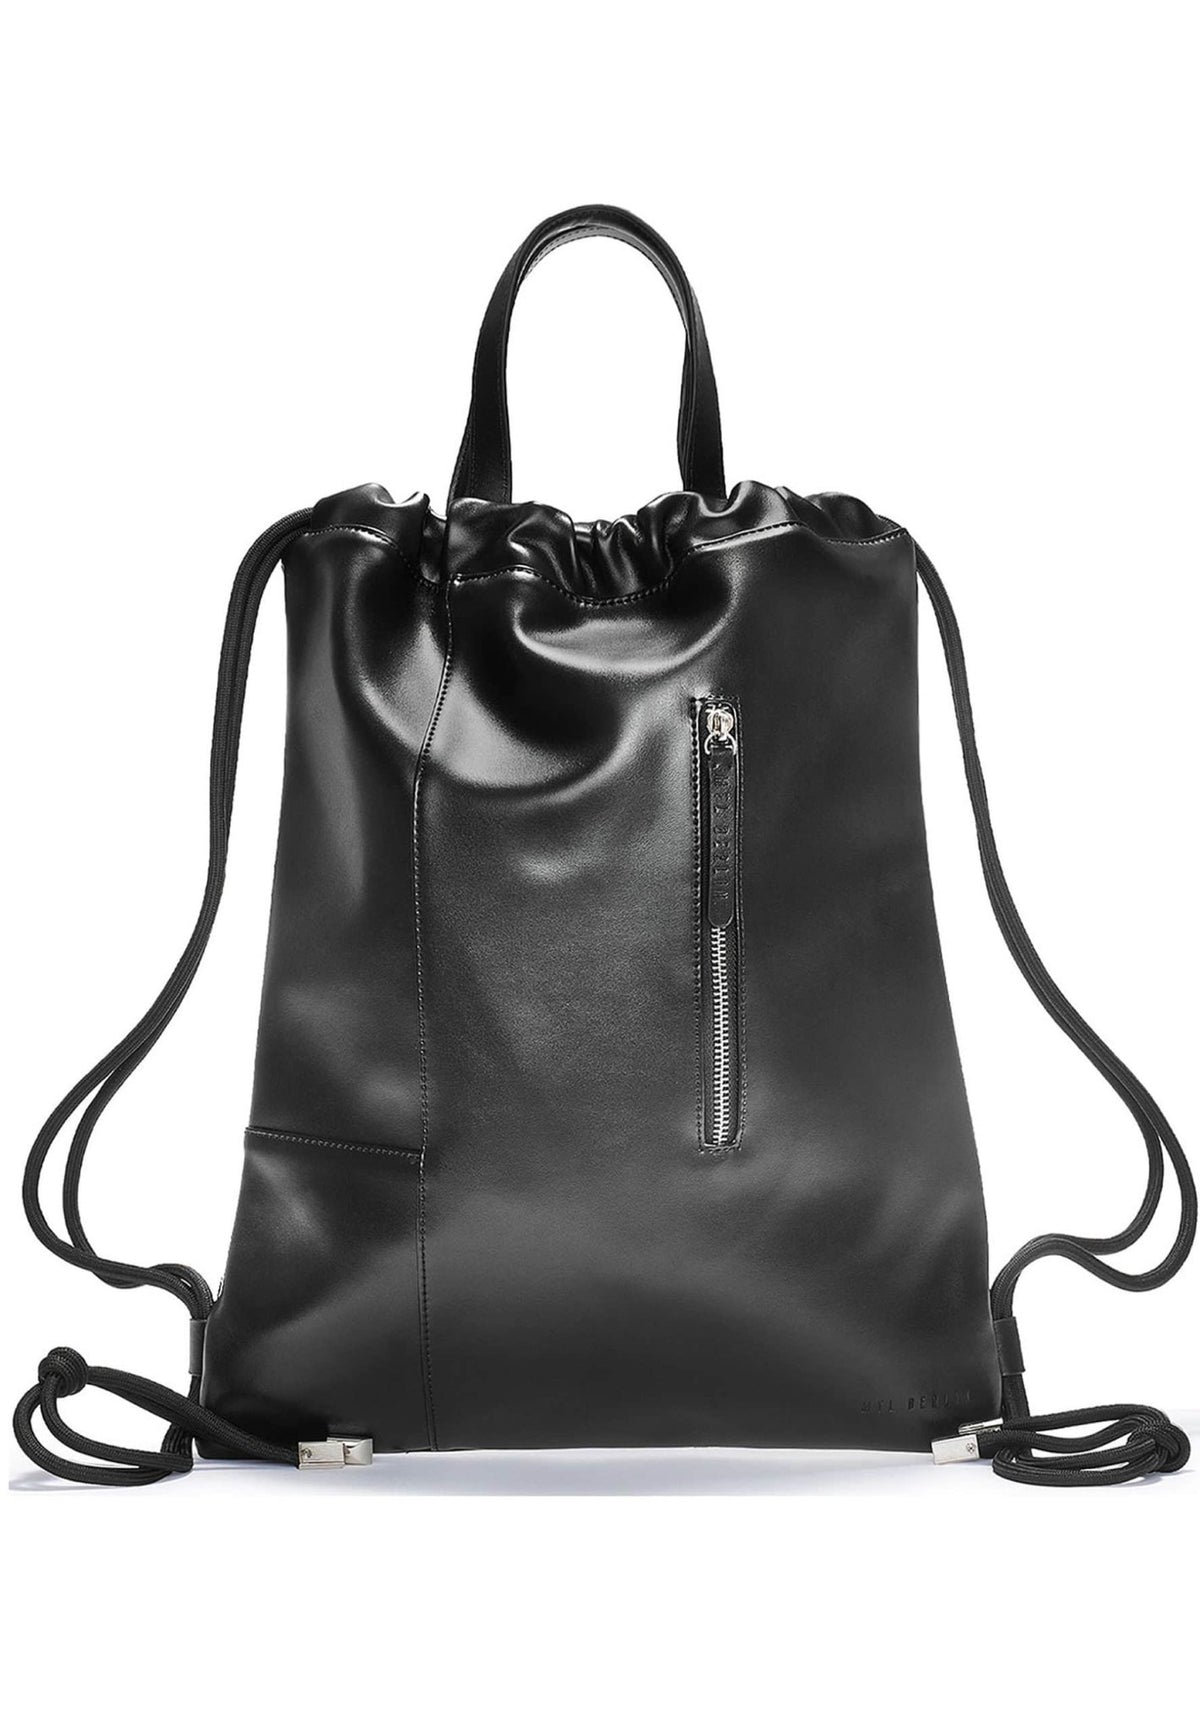 Tote Backpack Bag “Gemini” - MYL BERLIN - 4260654110012 - 4260654110012